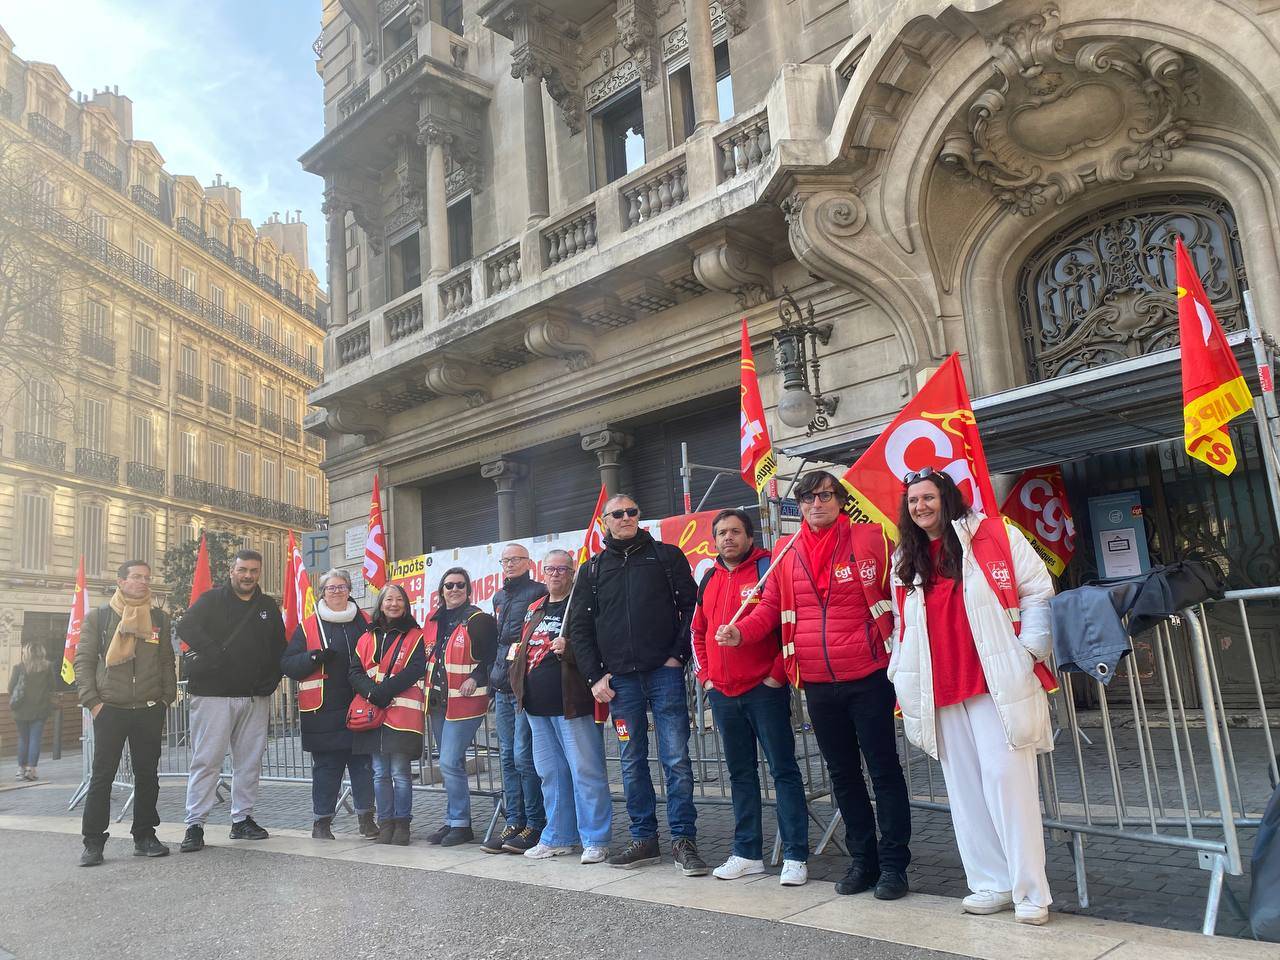 Réforme des retraites - Marseille : blocage du Centre des Finances Publiques de Sadi Carnot par la CGT